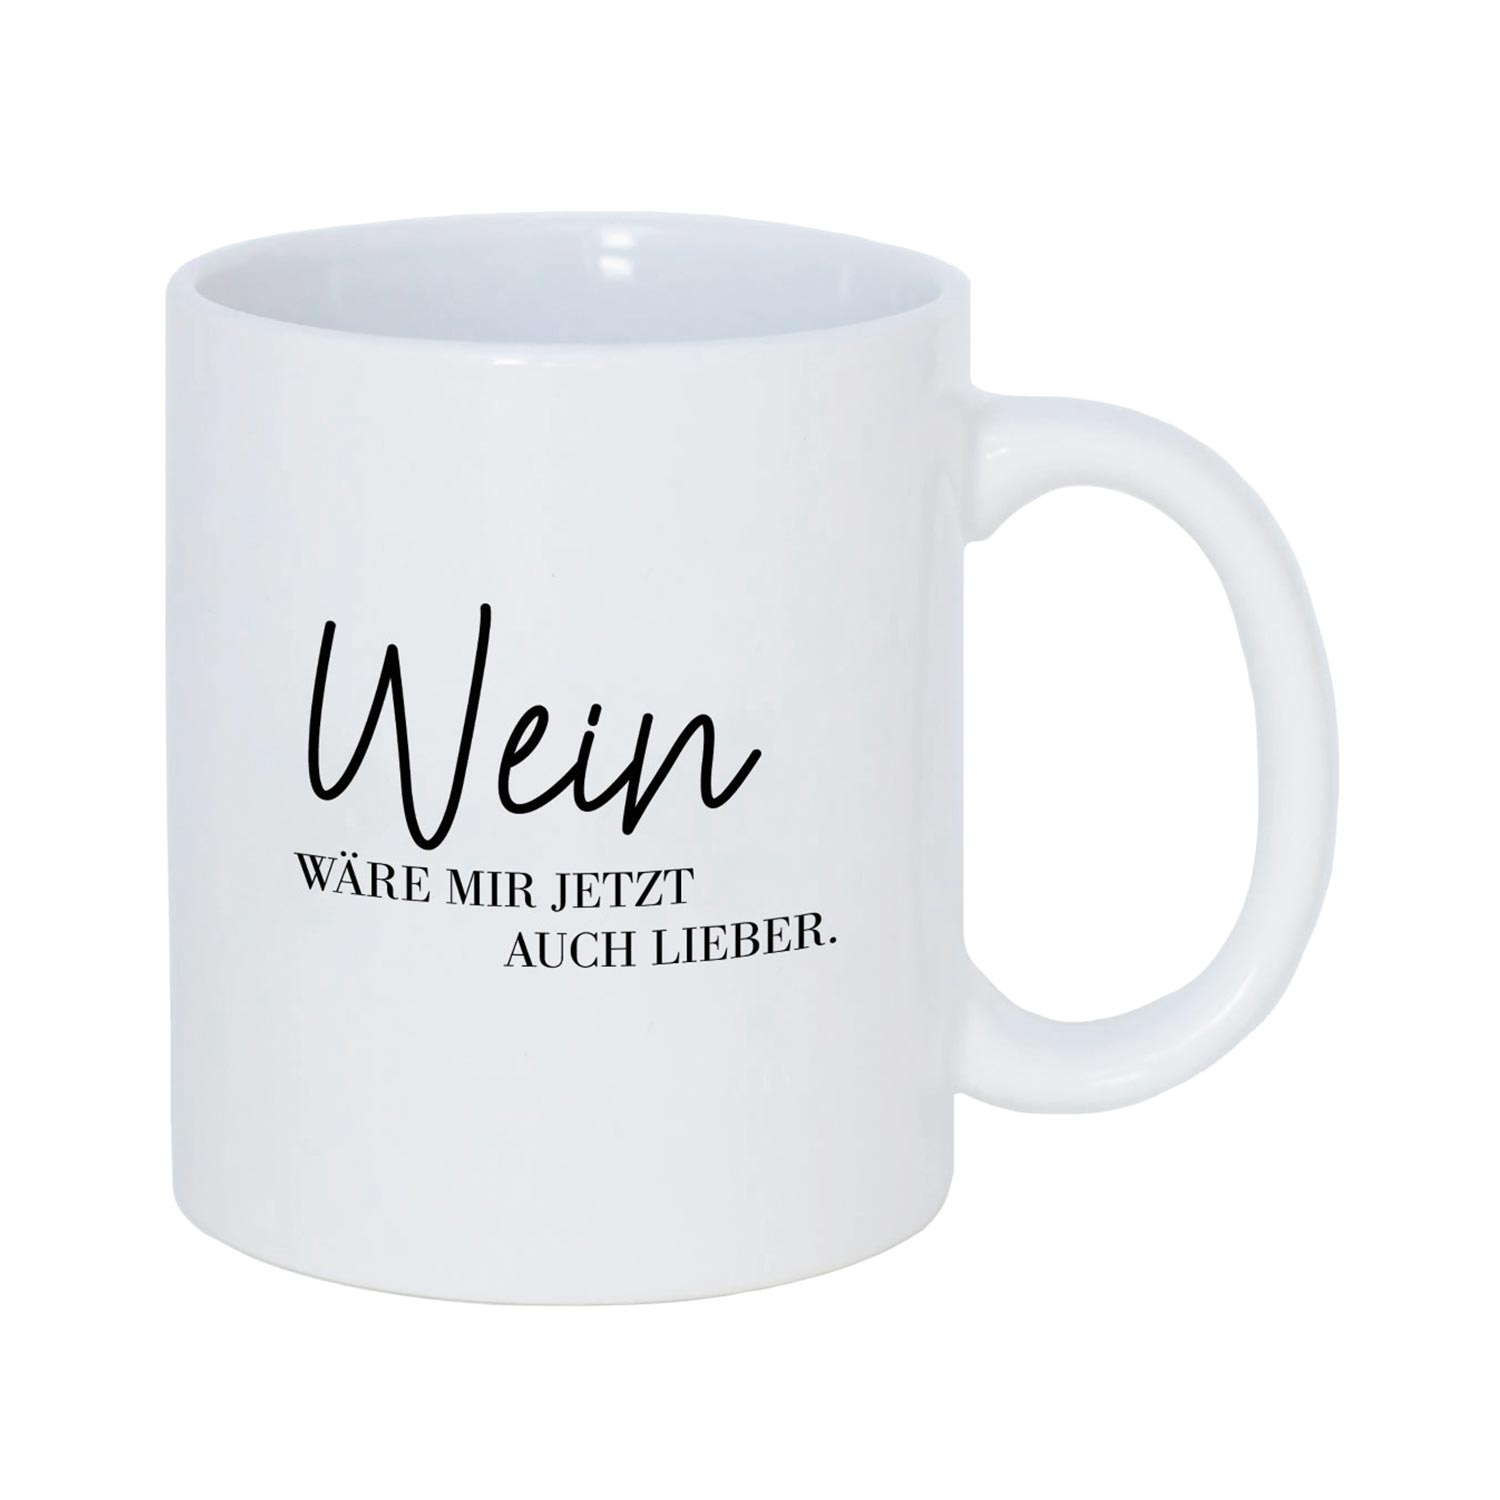 Tasse mit witzigem Spruch "Wein wäre mir jetzt auch lieber"